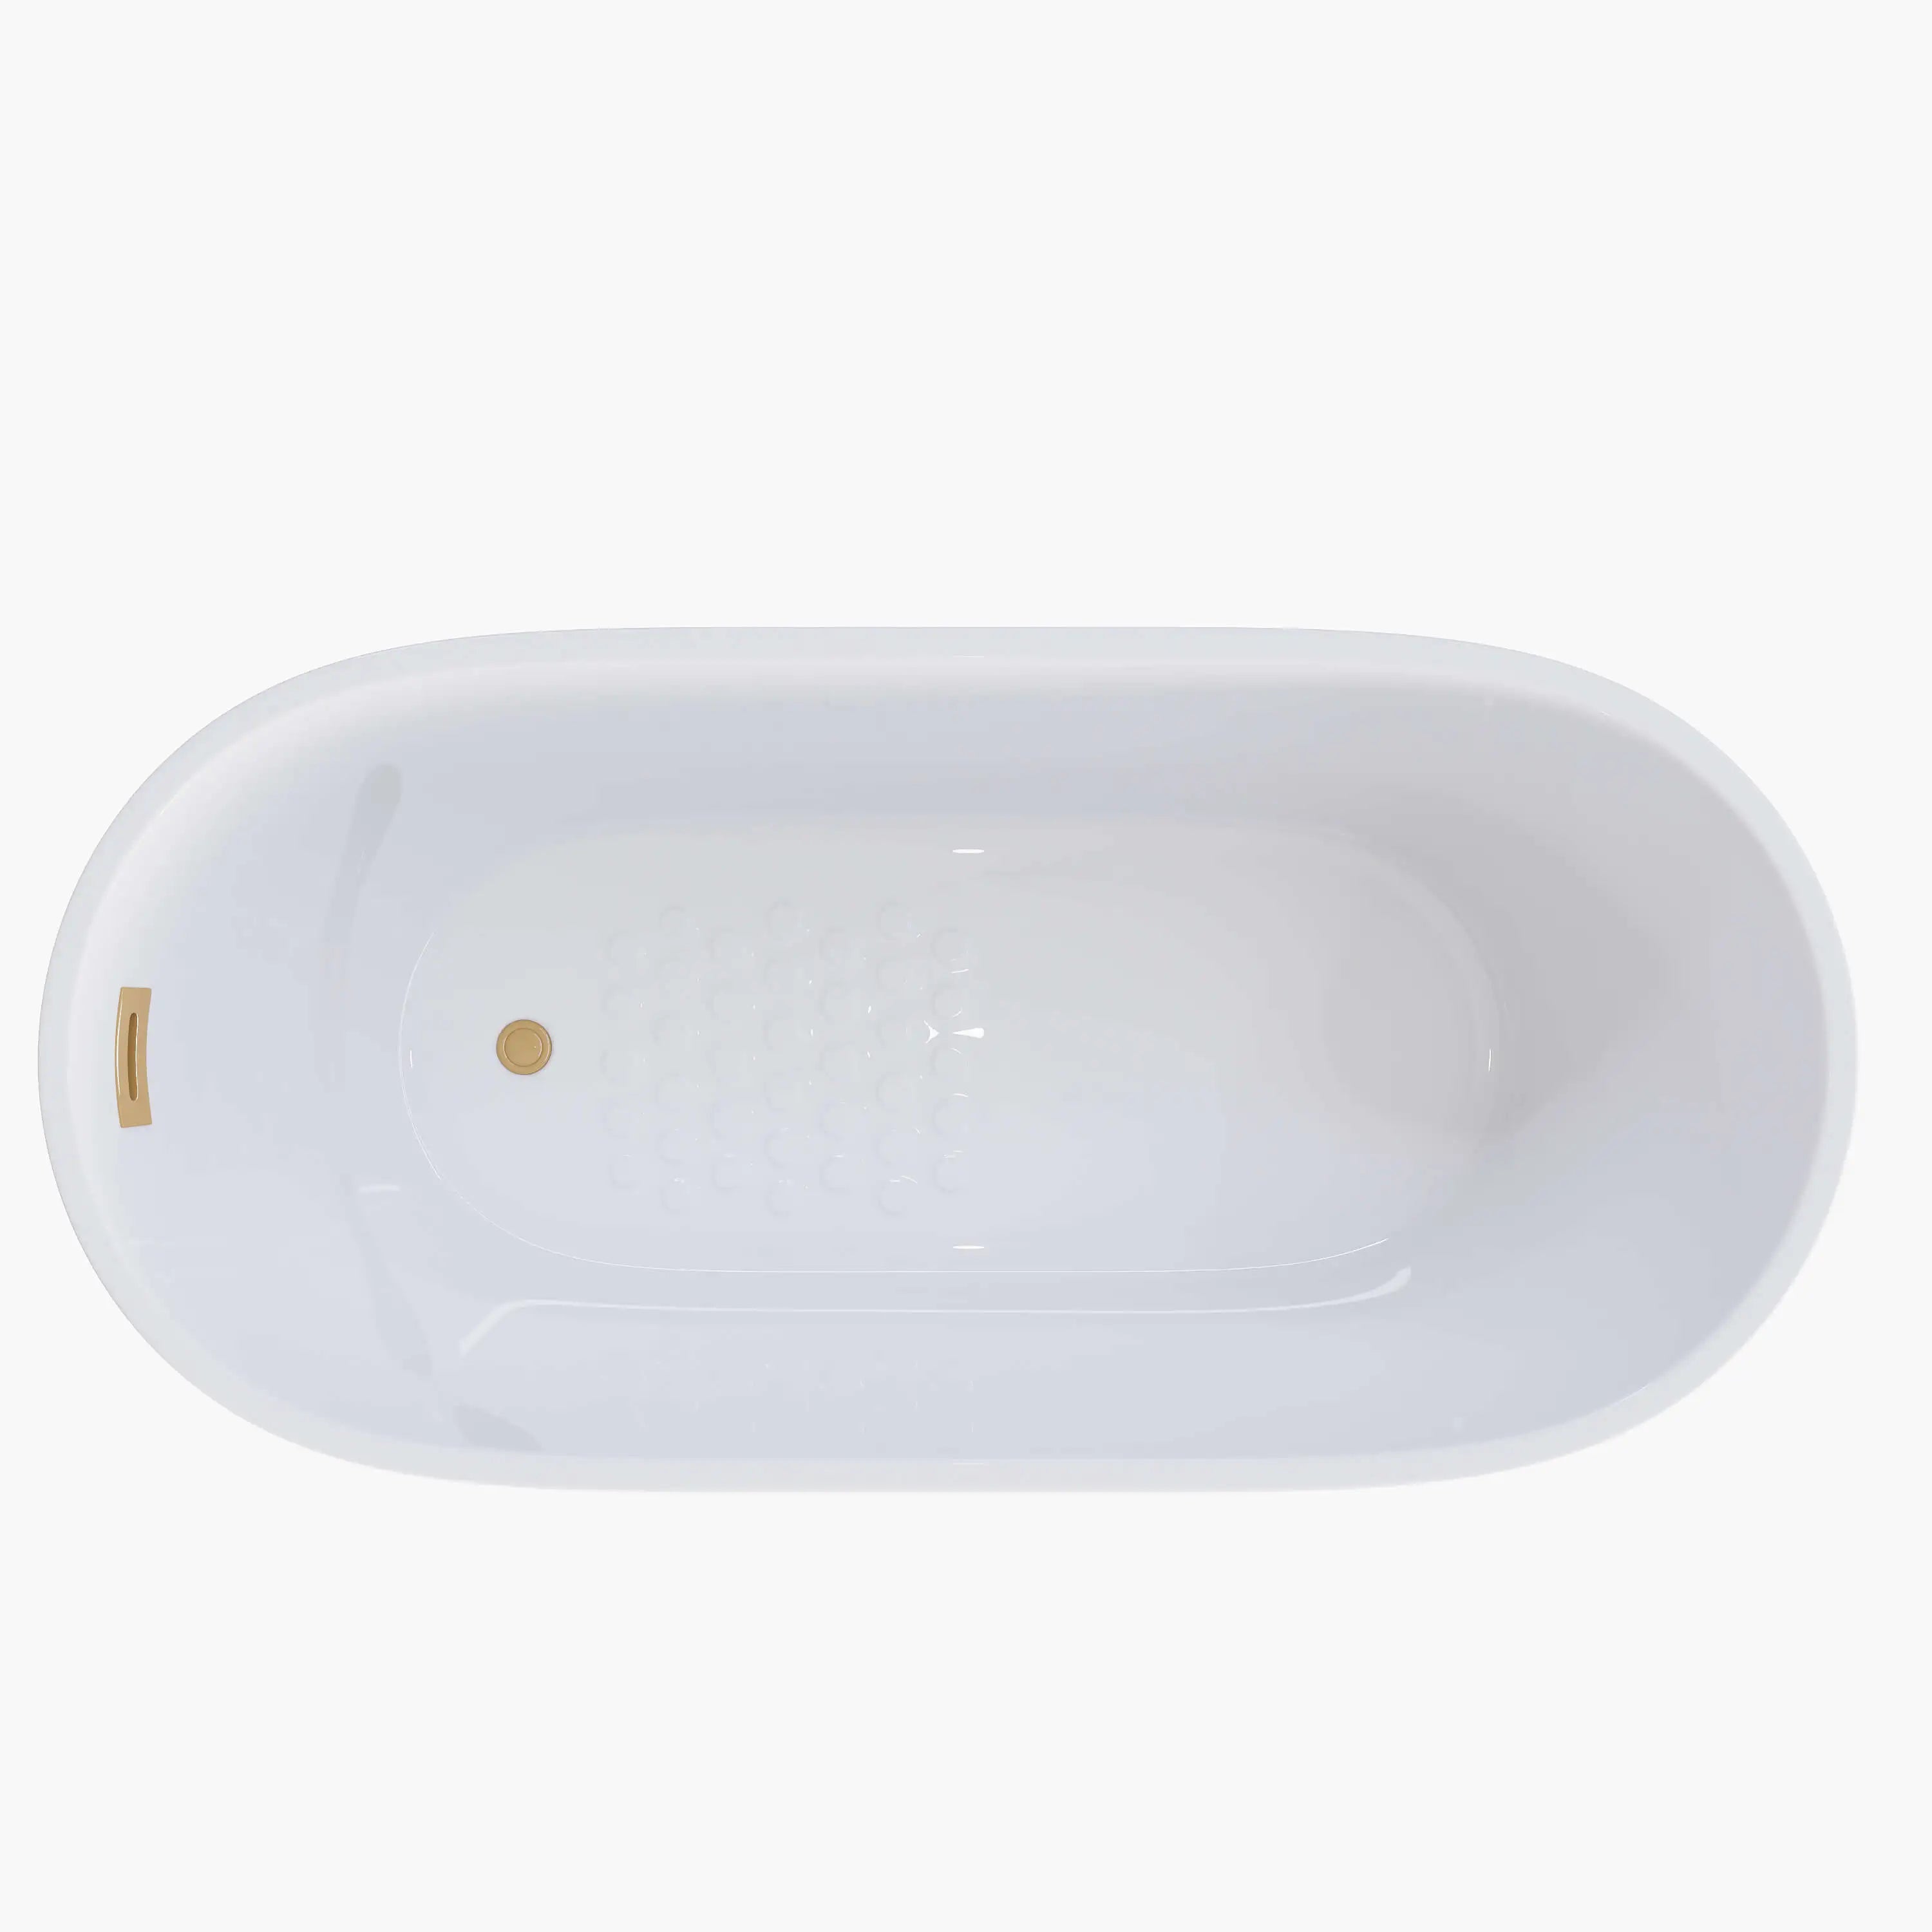 HOROW 59 Inch Acrylic Free Standing Bathtub Deep Soaking Bathtub Model TU59-SG